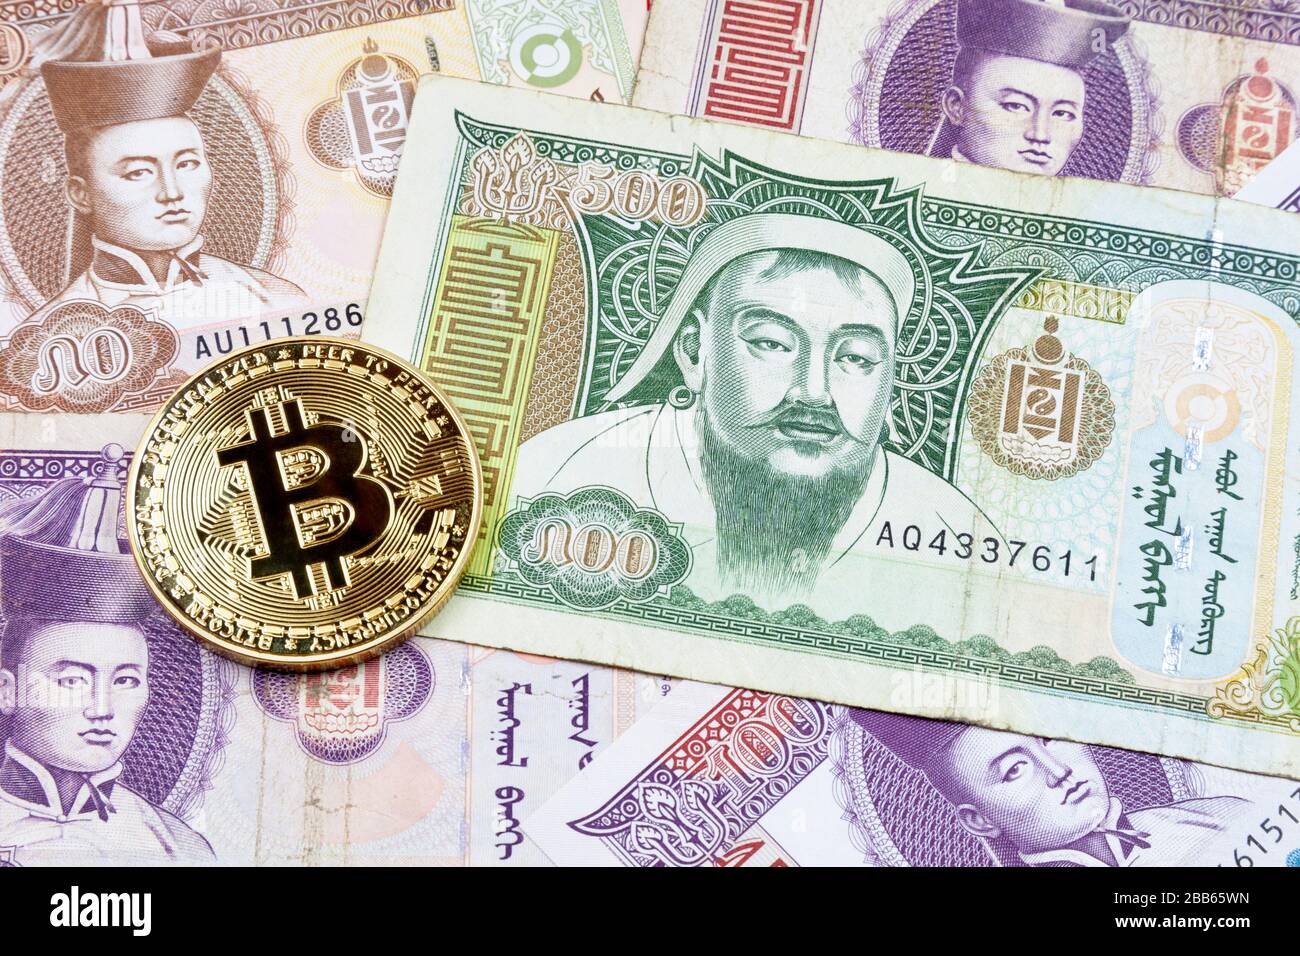 Gros plan sur une pièce de monnaie en Bitcoin doré au-dessus d'une pile de billets en Tögrög mongol. Banque D'Images